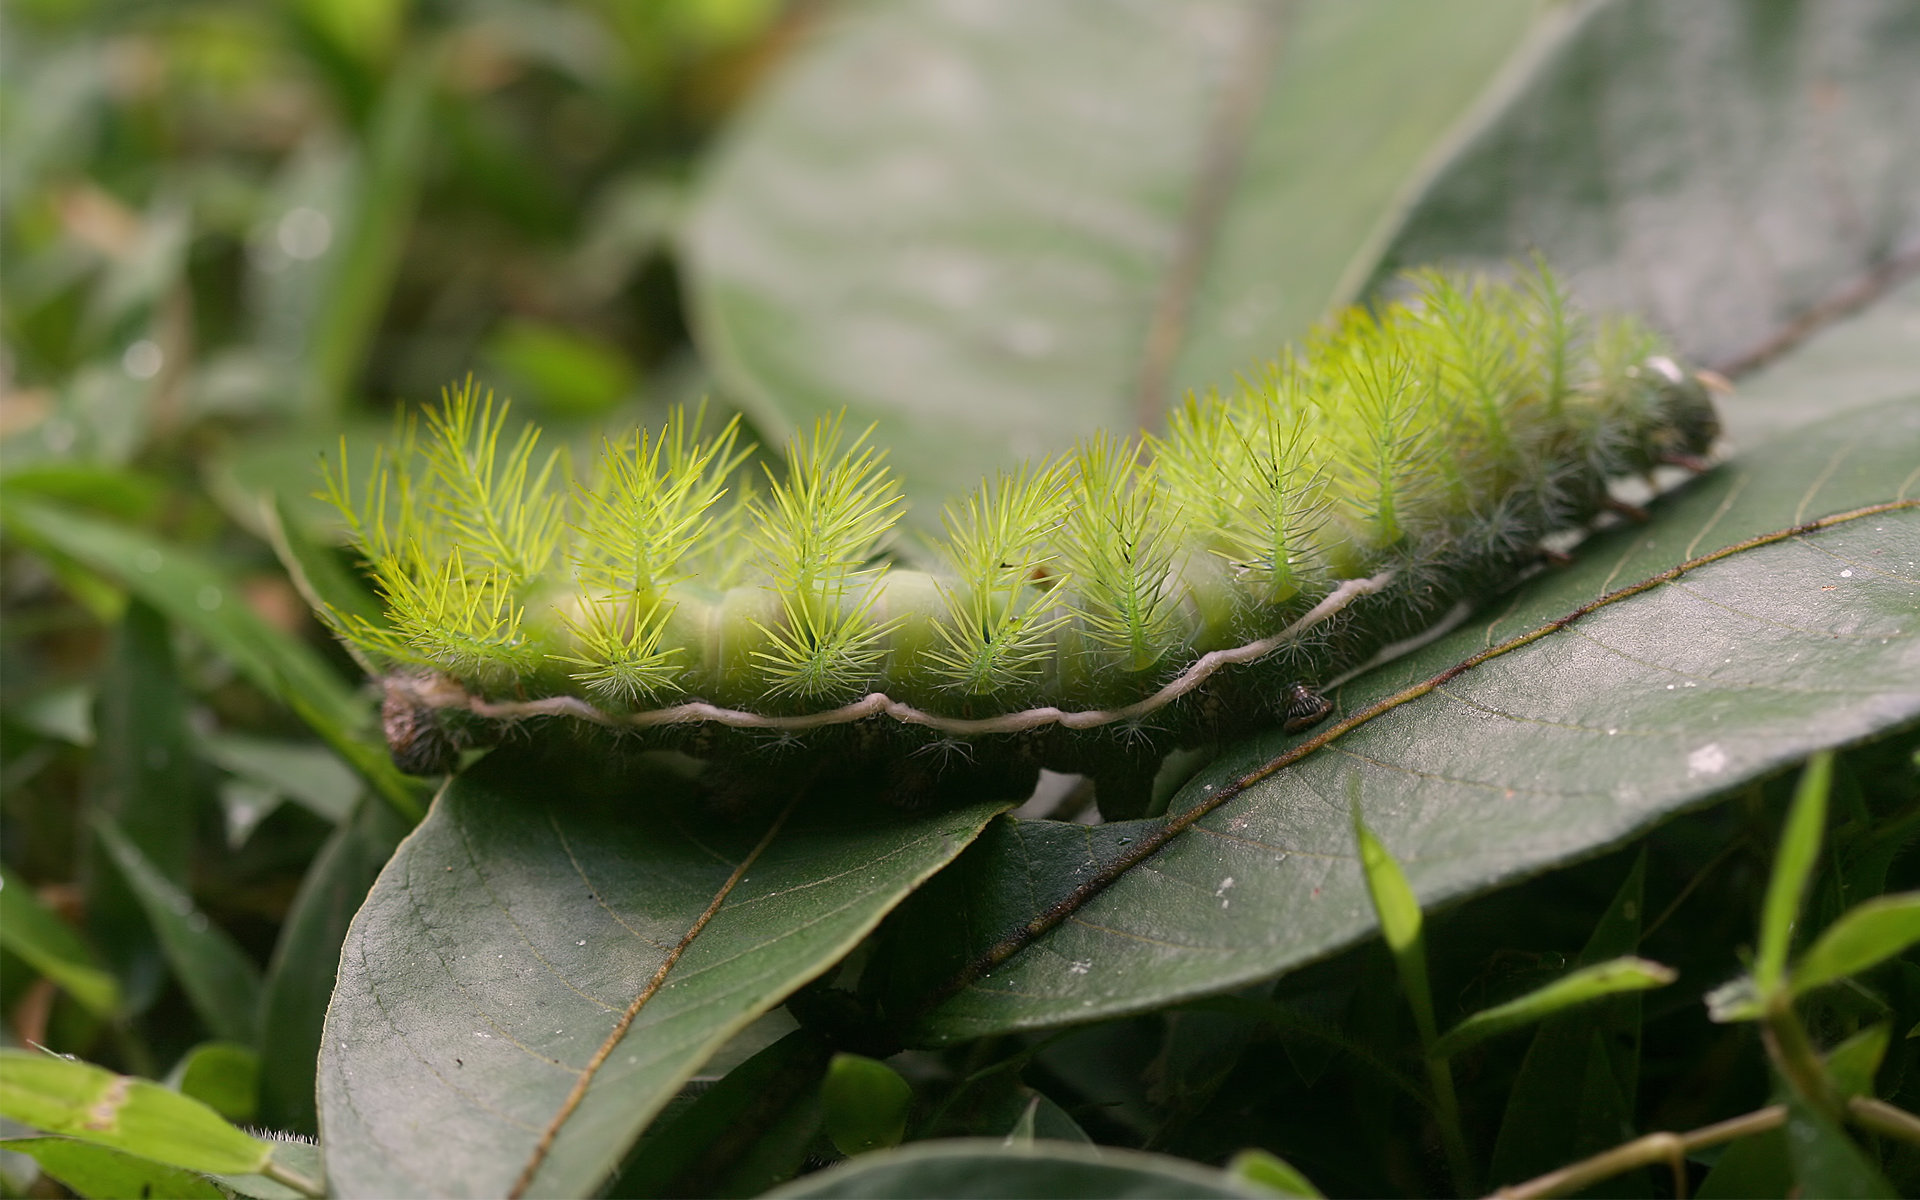 зеленая пушистая гусеница, листья, зелень, лето, макро, green furry caterpillar, leaves, green, summer, close-up